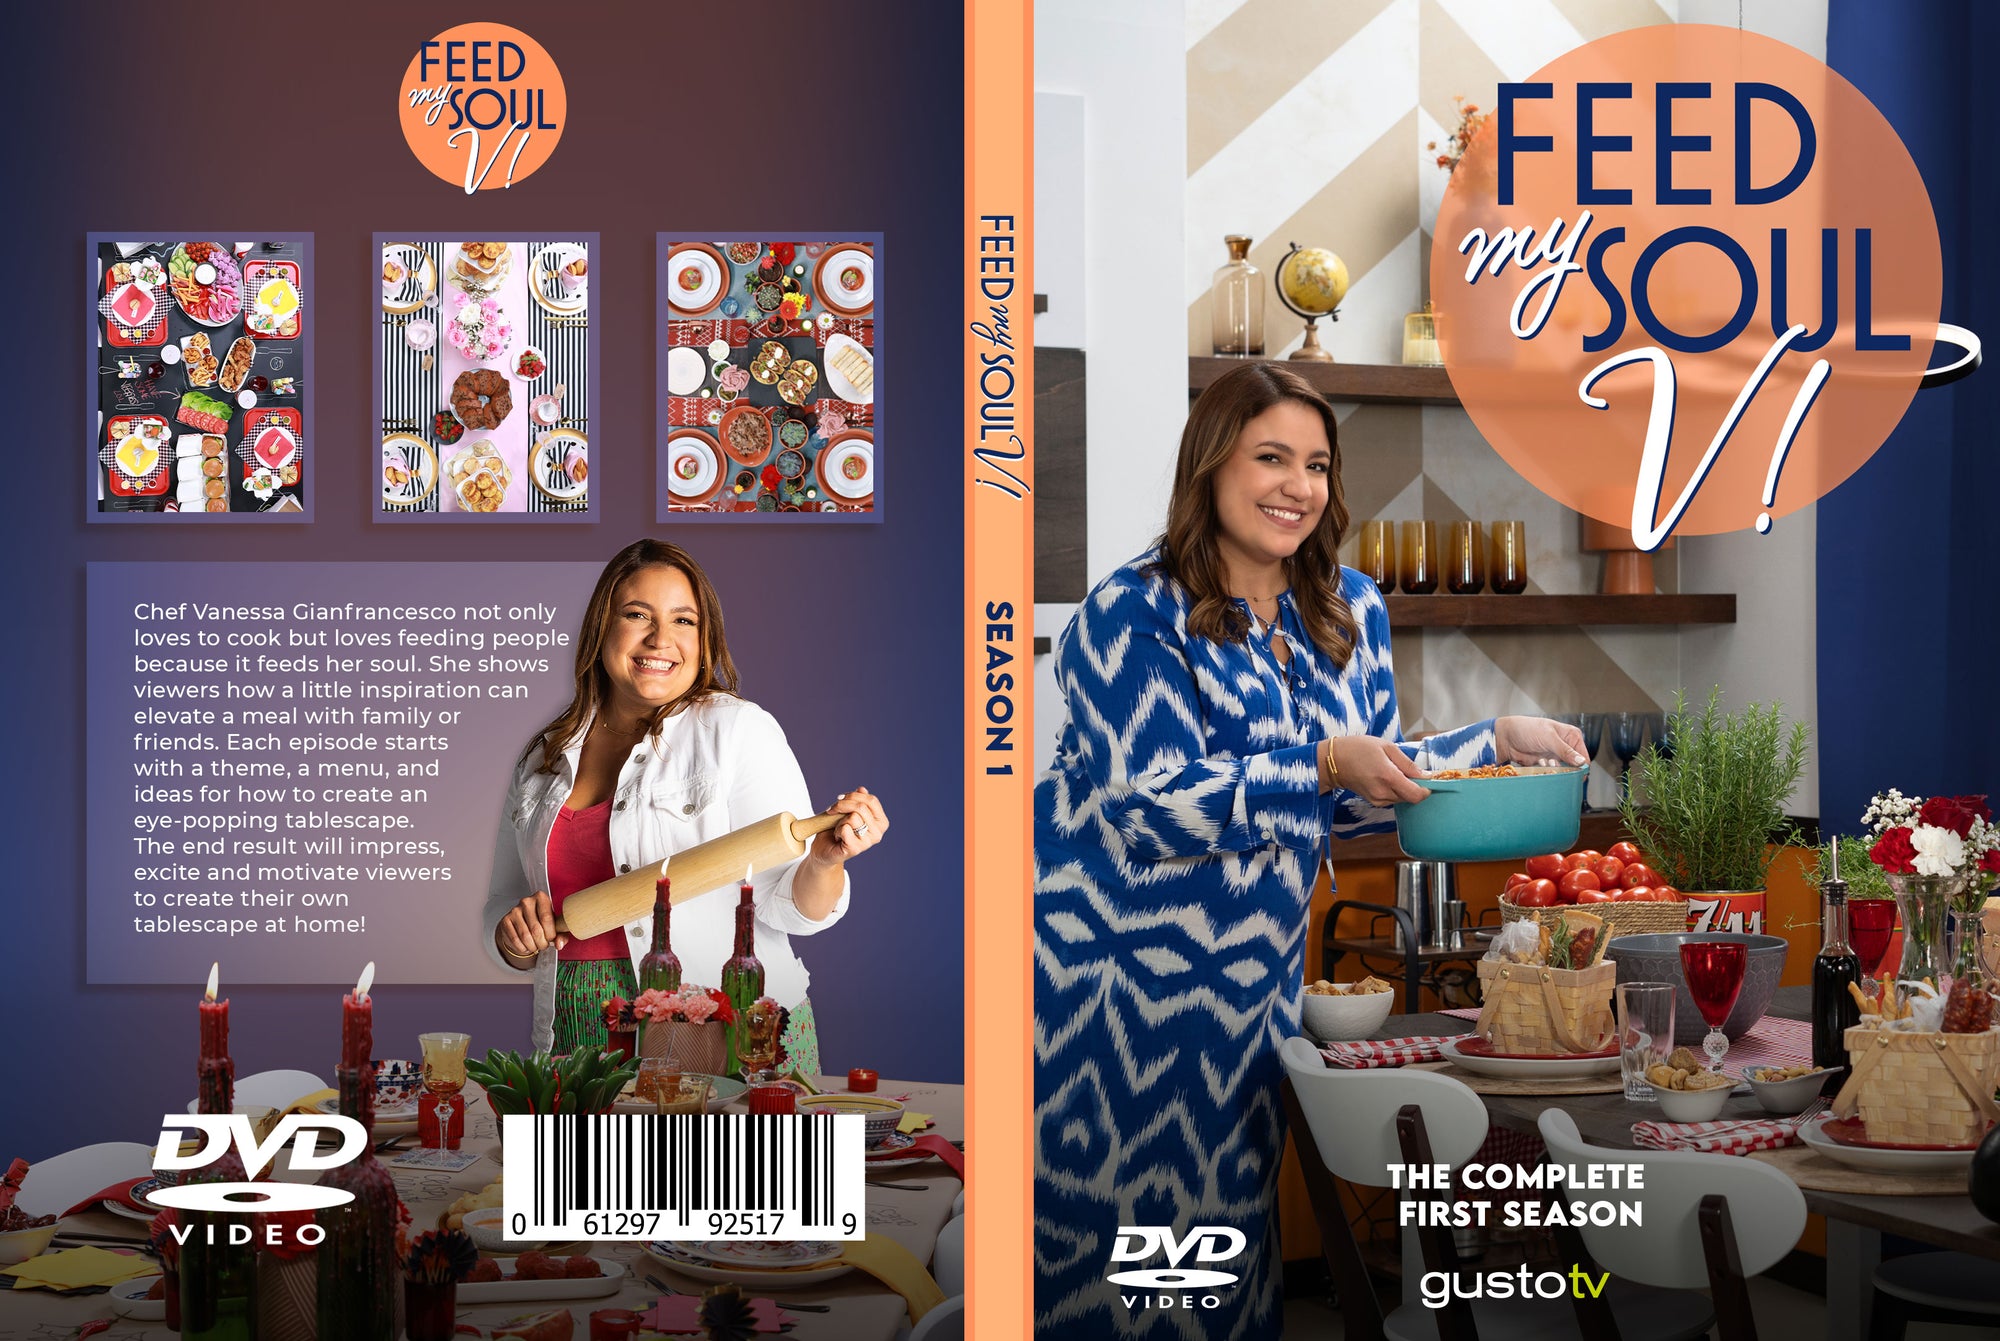 Feed My Soul...V! DVD